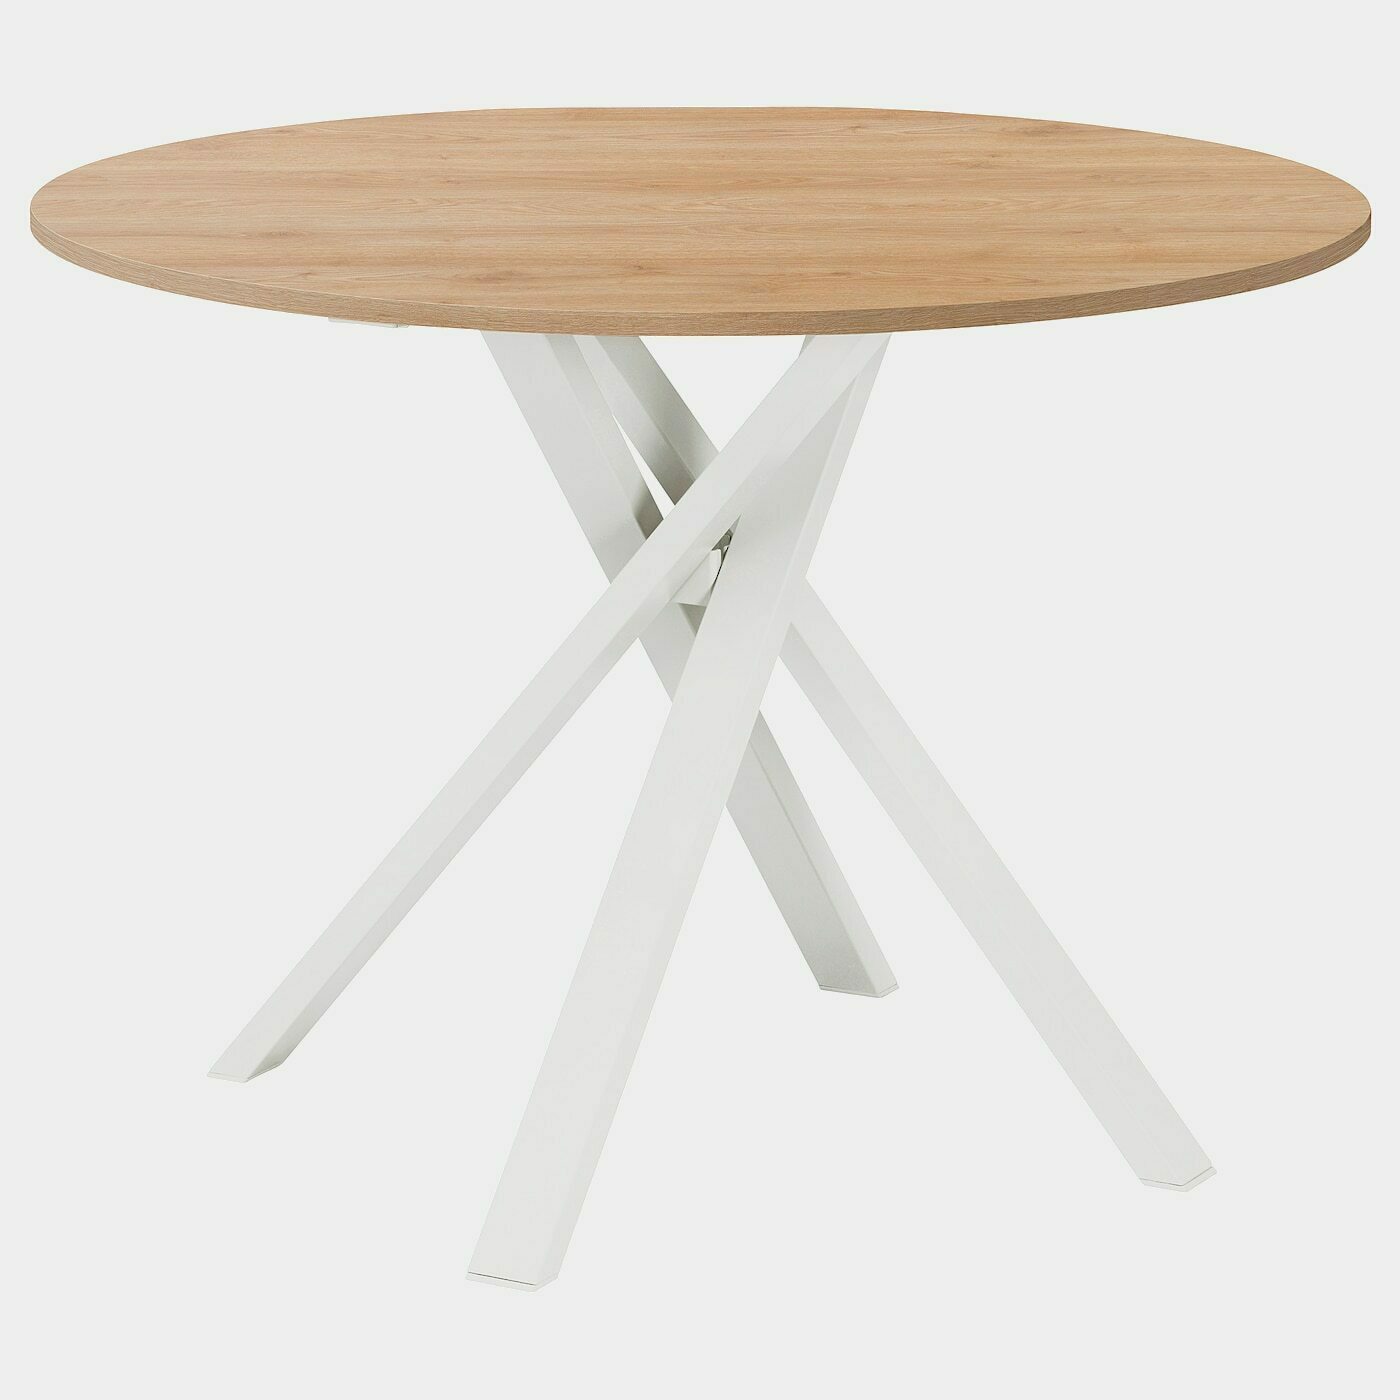 MARIEDAMM Tisch  -  - Möbel Ideen für dein Zuhause von Home Trends. Möbel Trends von Social Media Influencer für dein Skandi Zuhause.